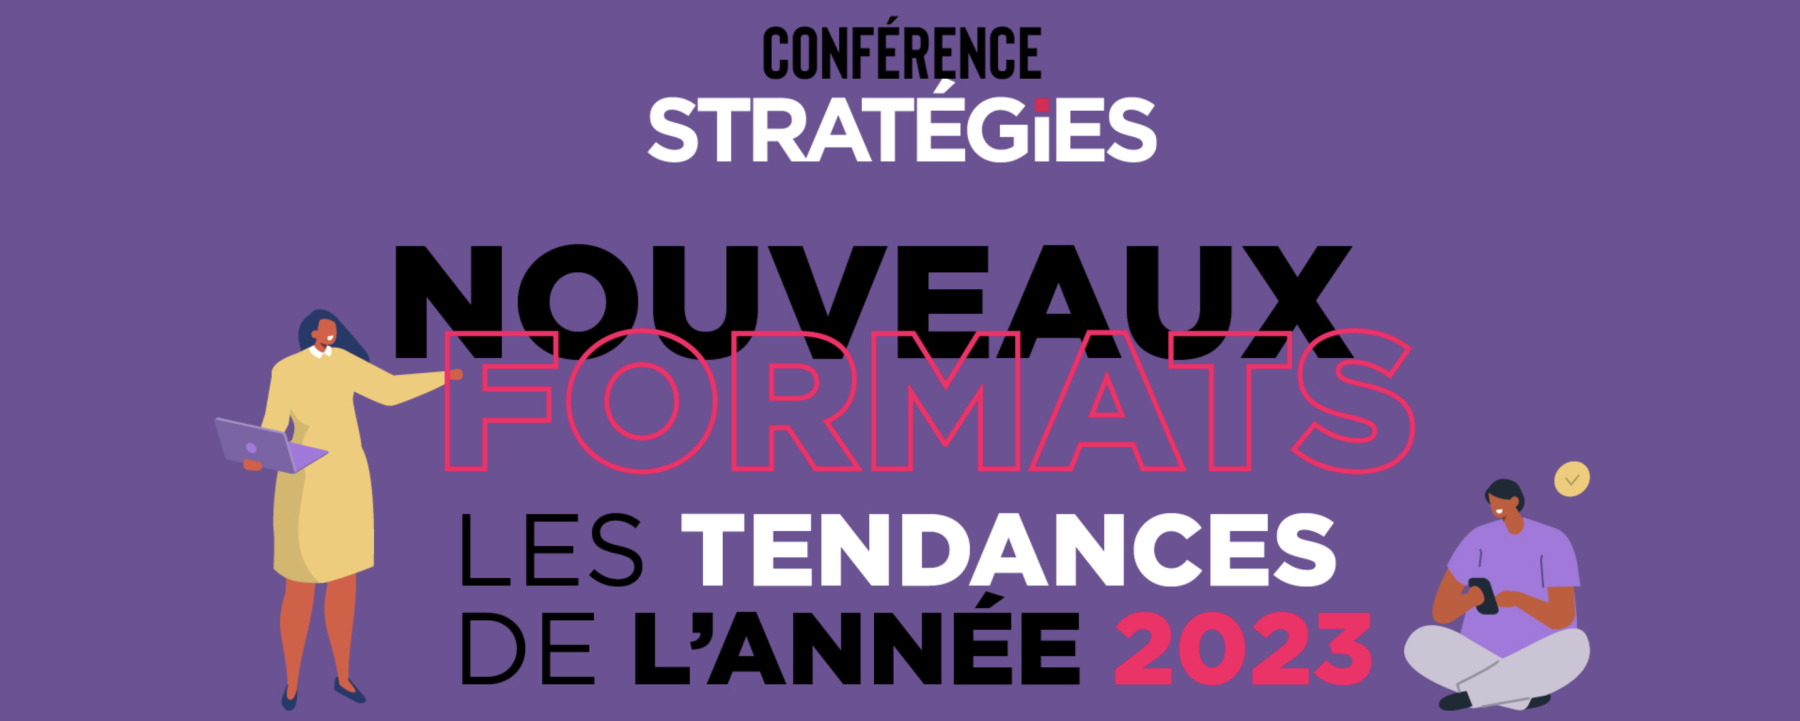 Conférence Stratégies : Nouveaux formats, les tendances 2023